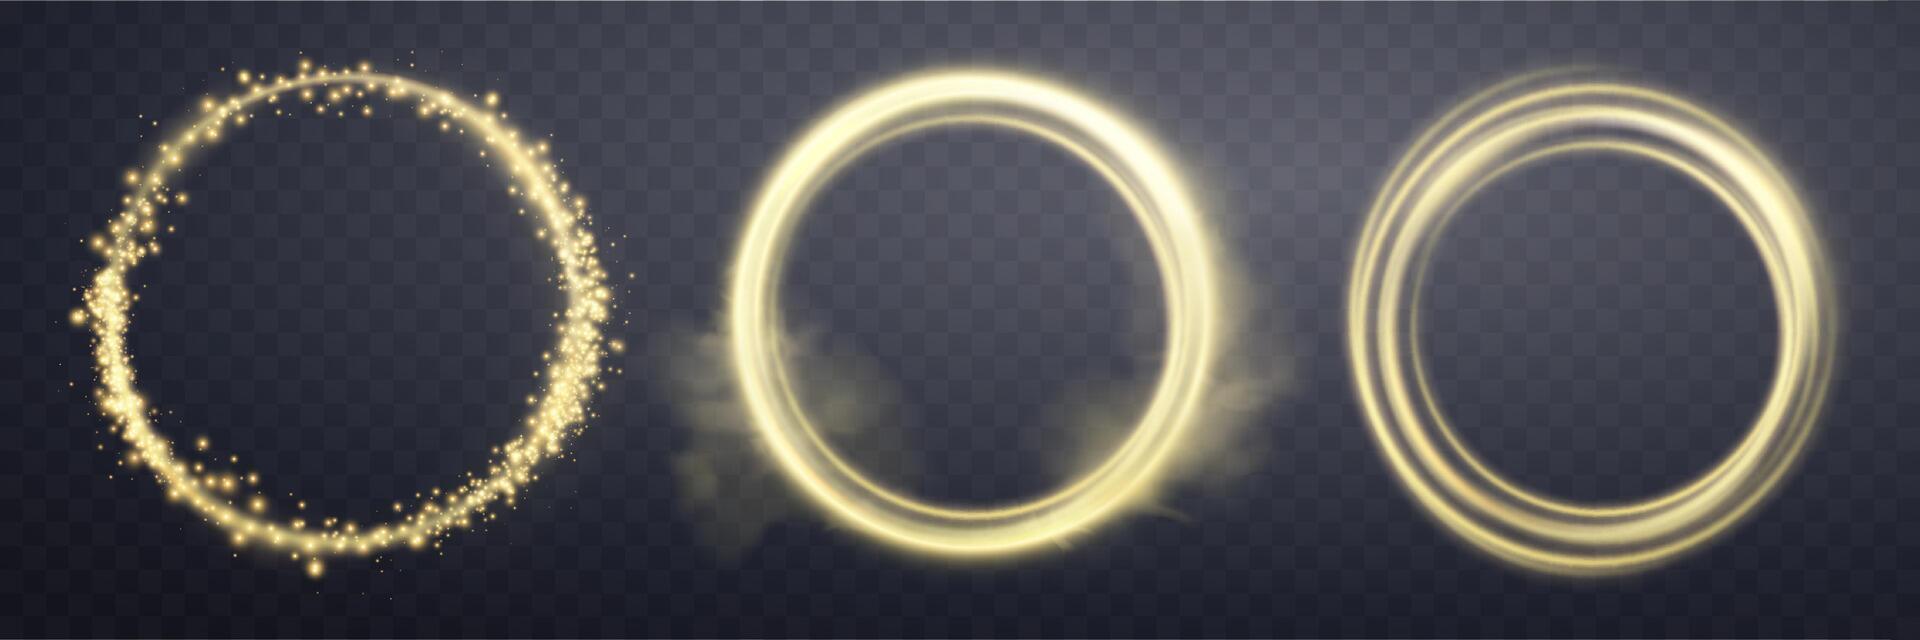 Gold Magie Ring mit glühend. Neon- realistisch Energie Fackel Heiligenschein Ring. abstrakt Licht bewirken auf ein dunkel Hintergrund. Vektor Illustration.